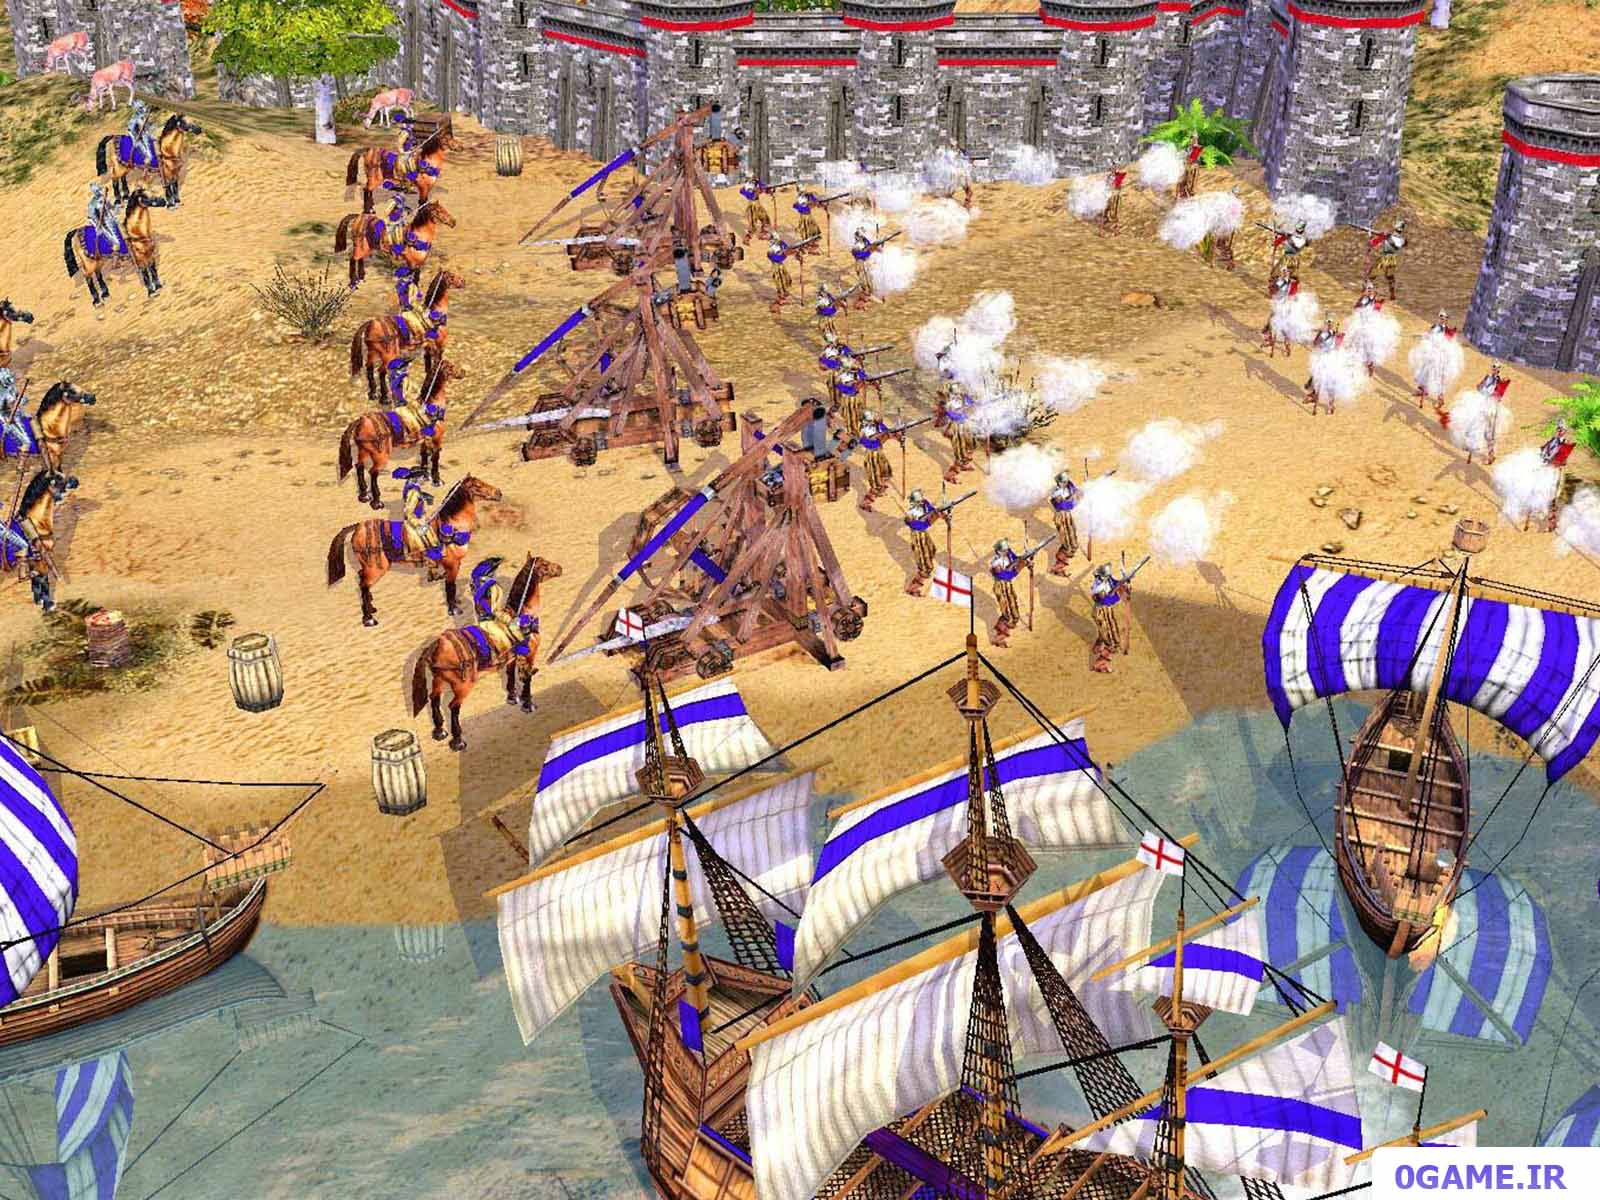 دانلود بازی امپراتوری: طلوع دنیای مدرن (Empires: Dawn of the Modern World) نسخه کامل برای کامپیوتر